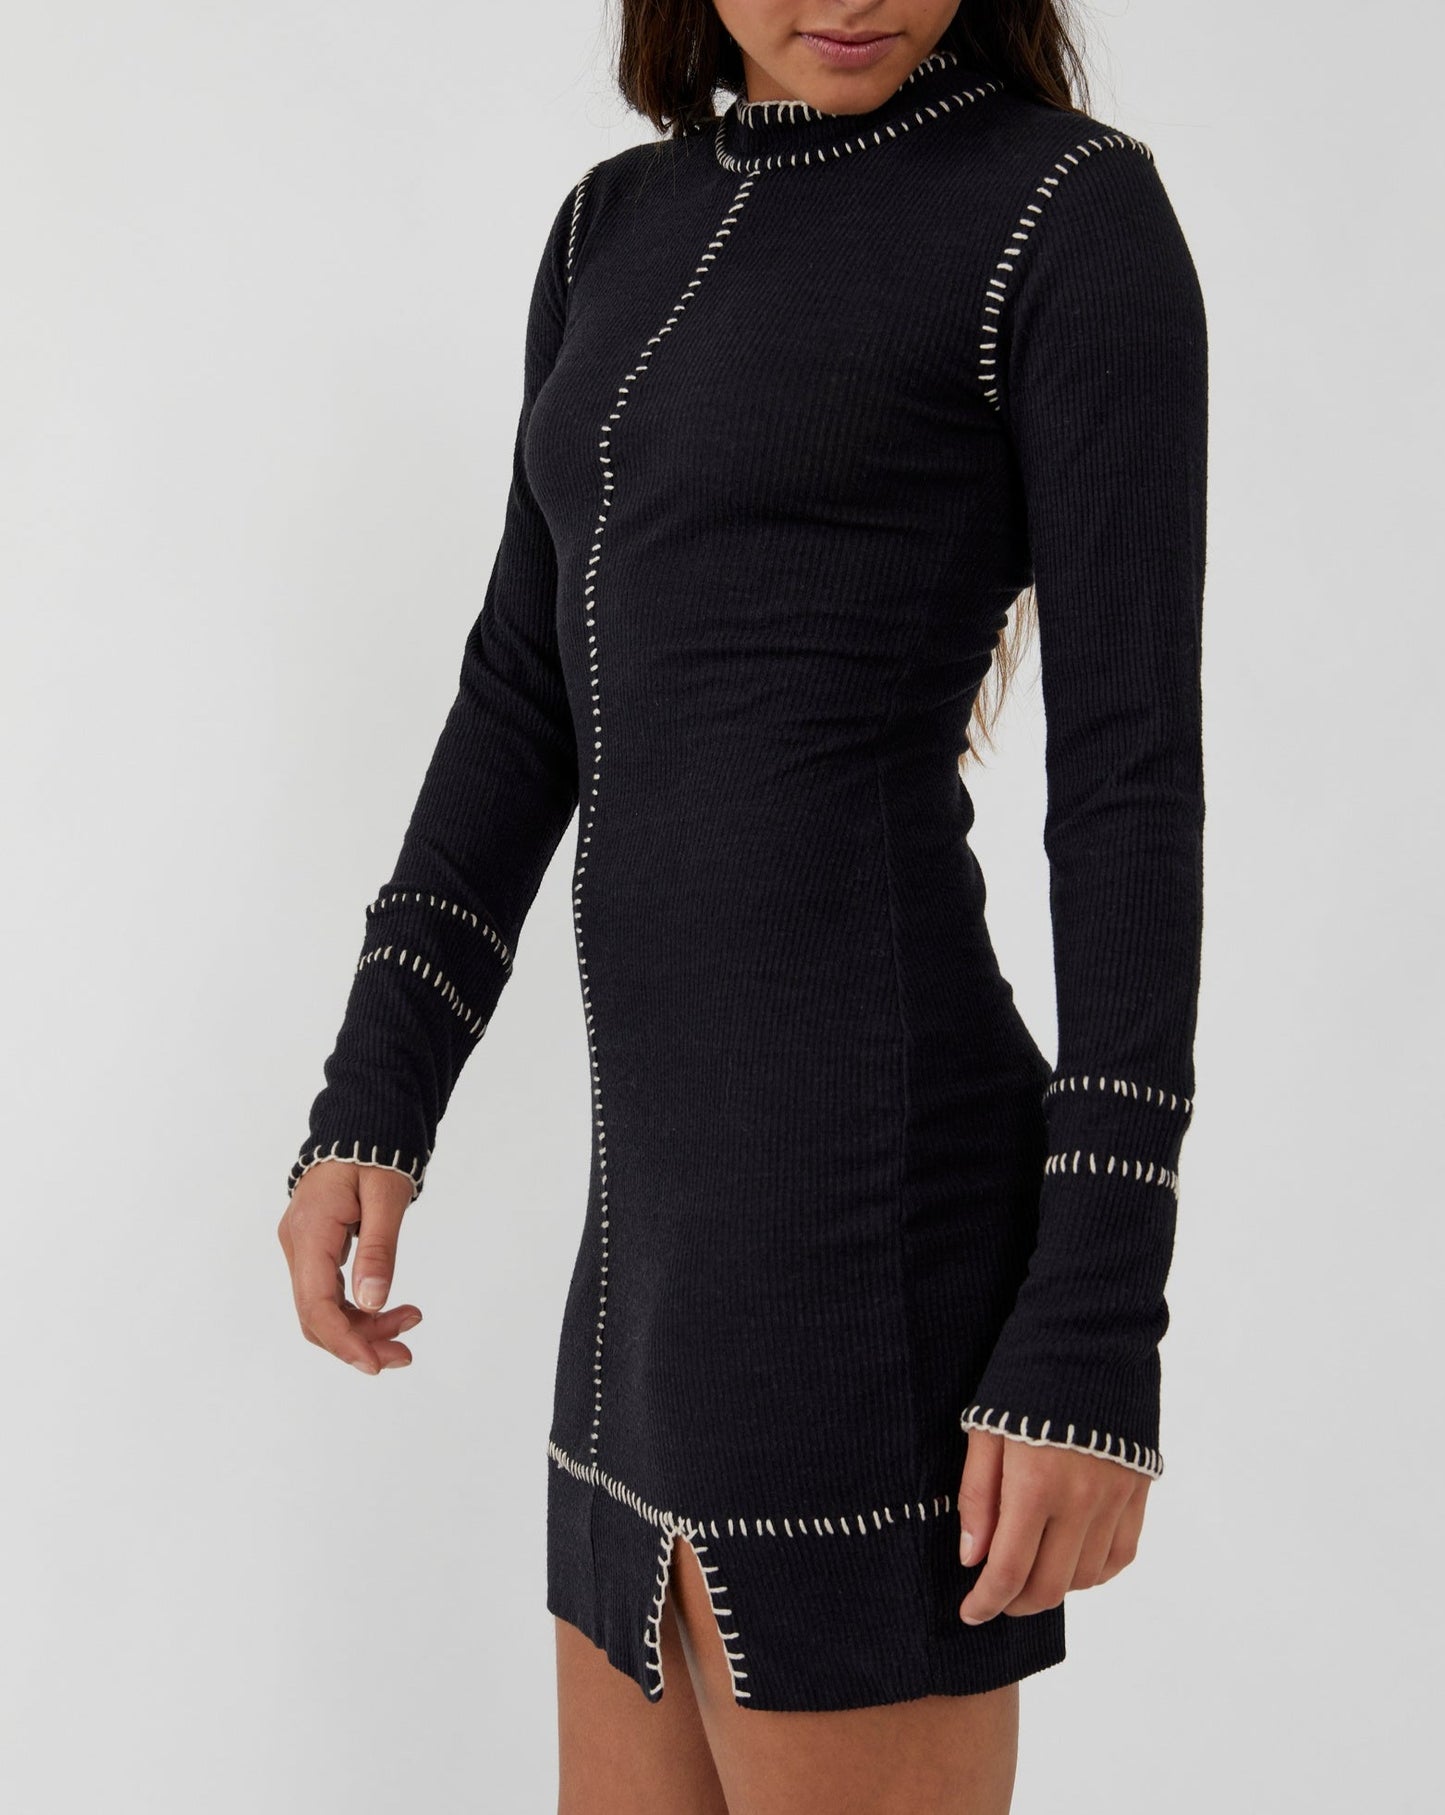 Miranda Mini Dress Free People Black Mini Dress With Stitching